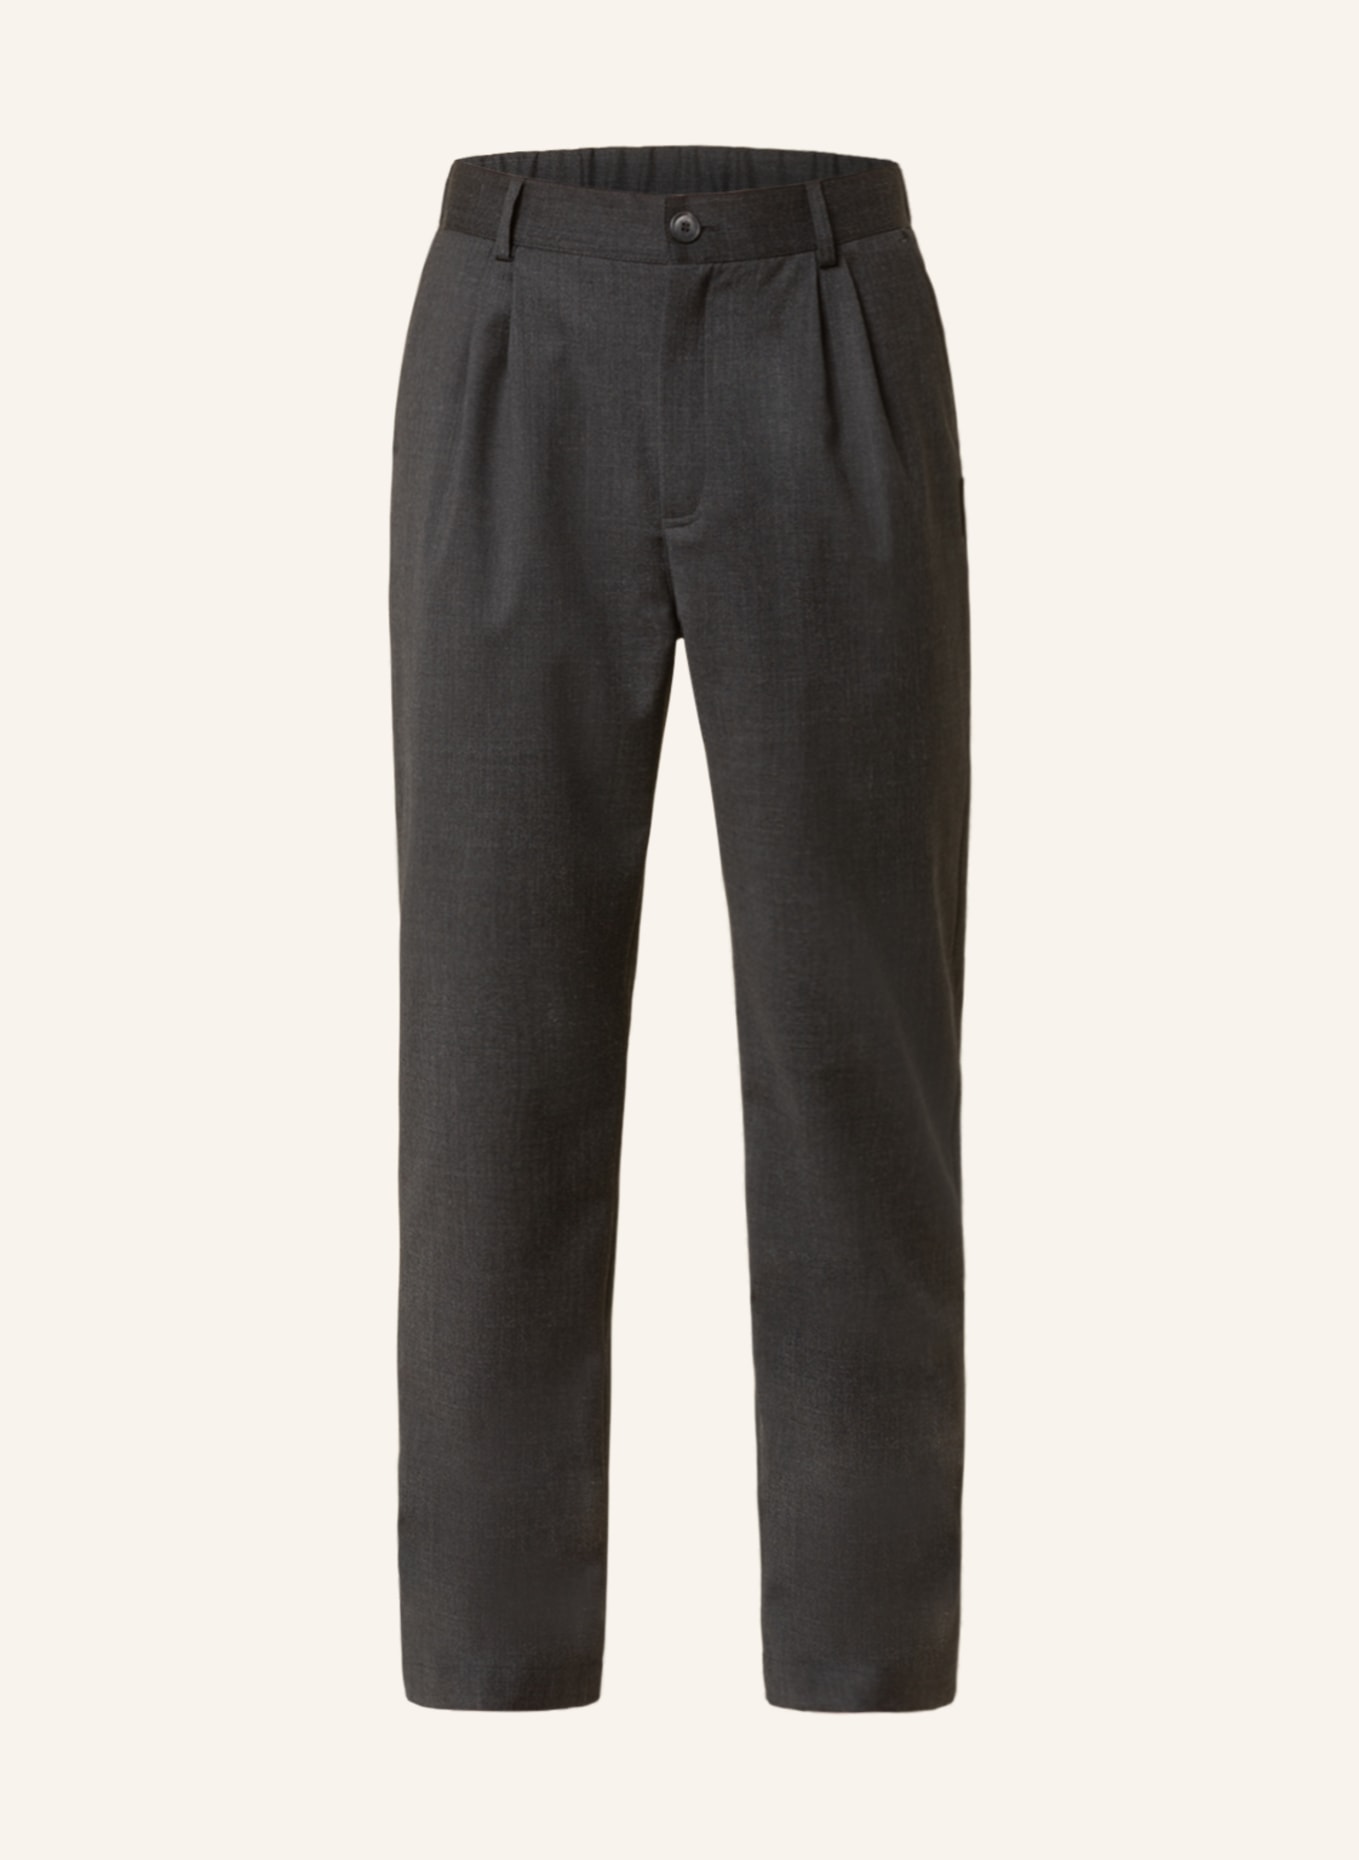 HAN KJØBENHAVN Trousers regular fit, Color: DARK GRAY (Image 1)